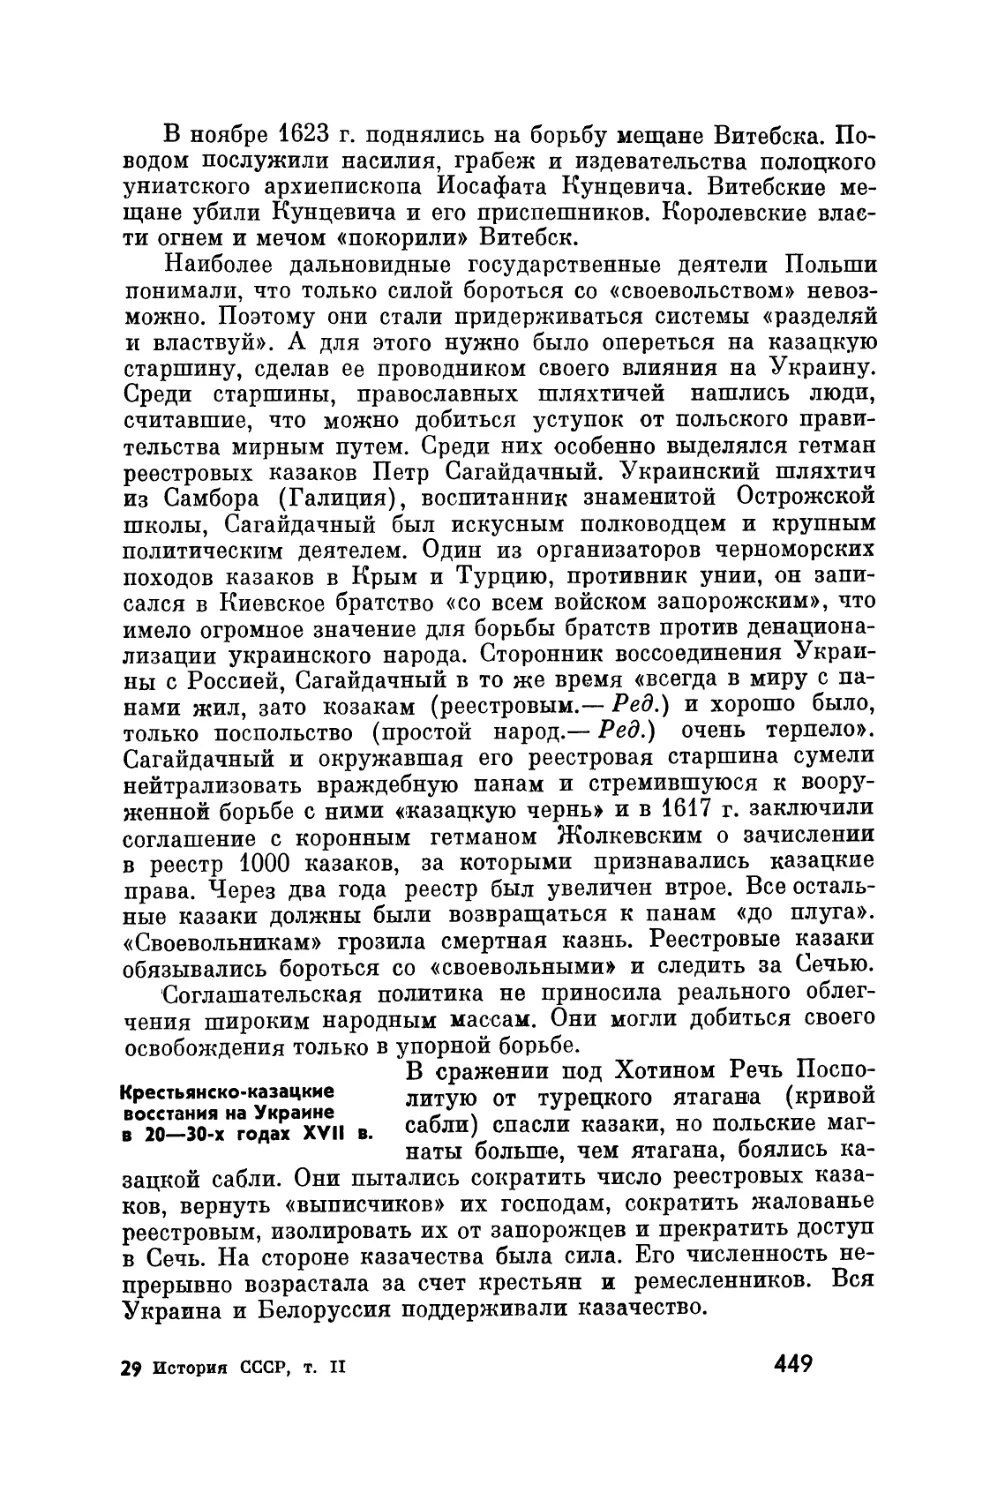 Крестьянско-казацкие восстания на Украине в 20—30-х годах XVII в.